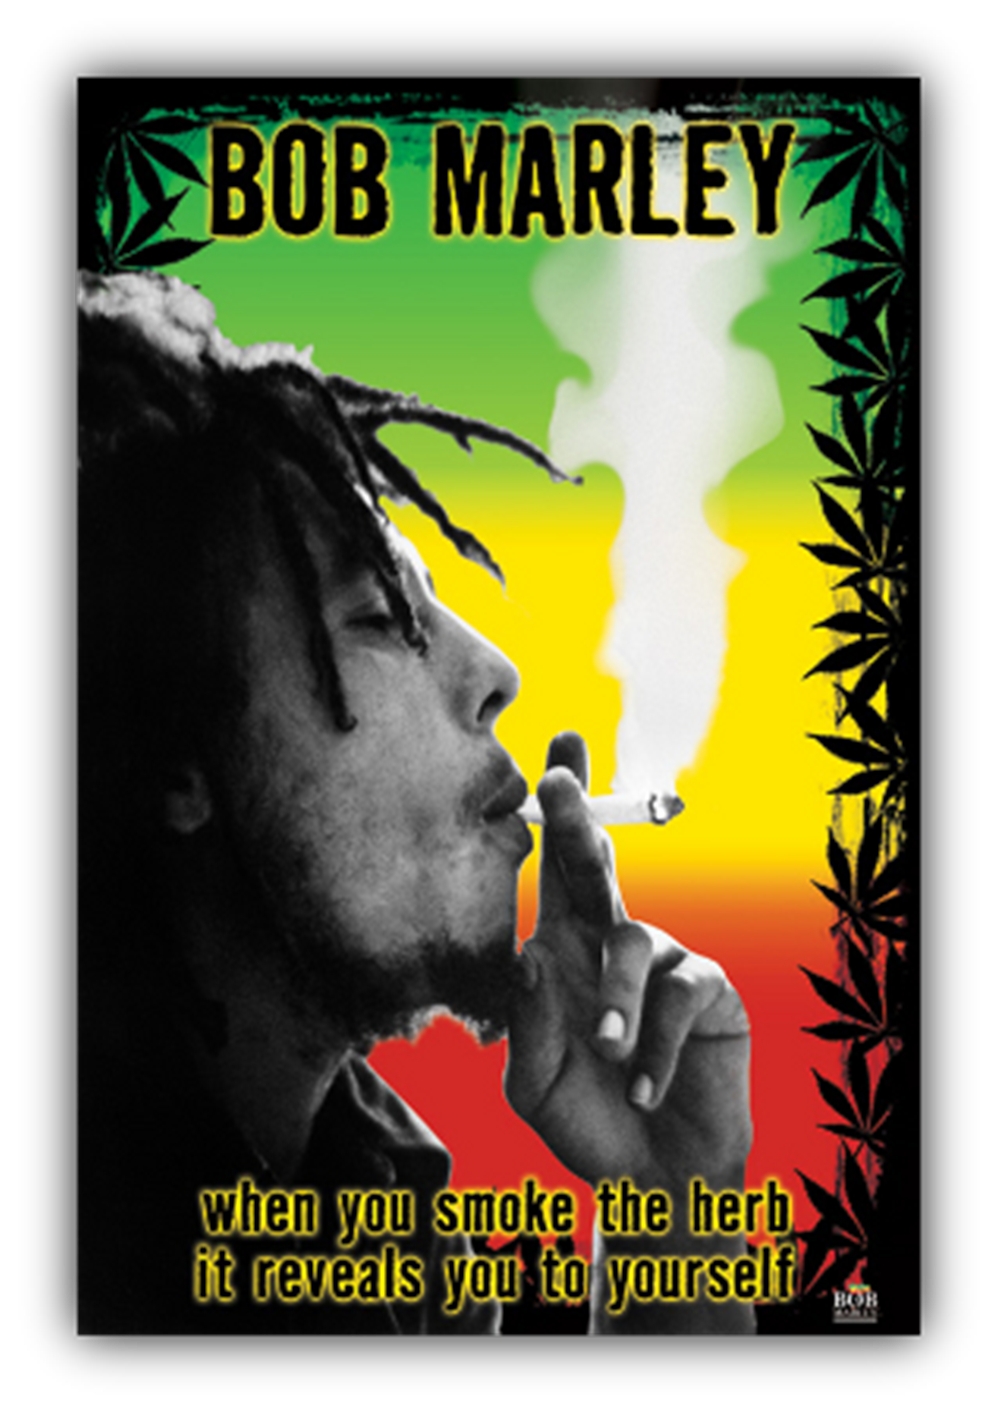 BOB MARLEY SMOKE FLAG